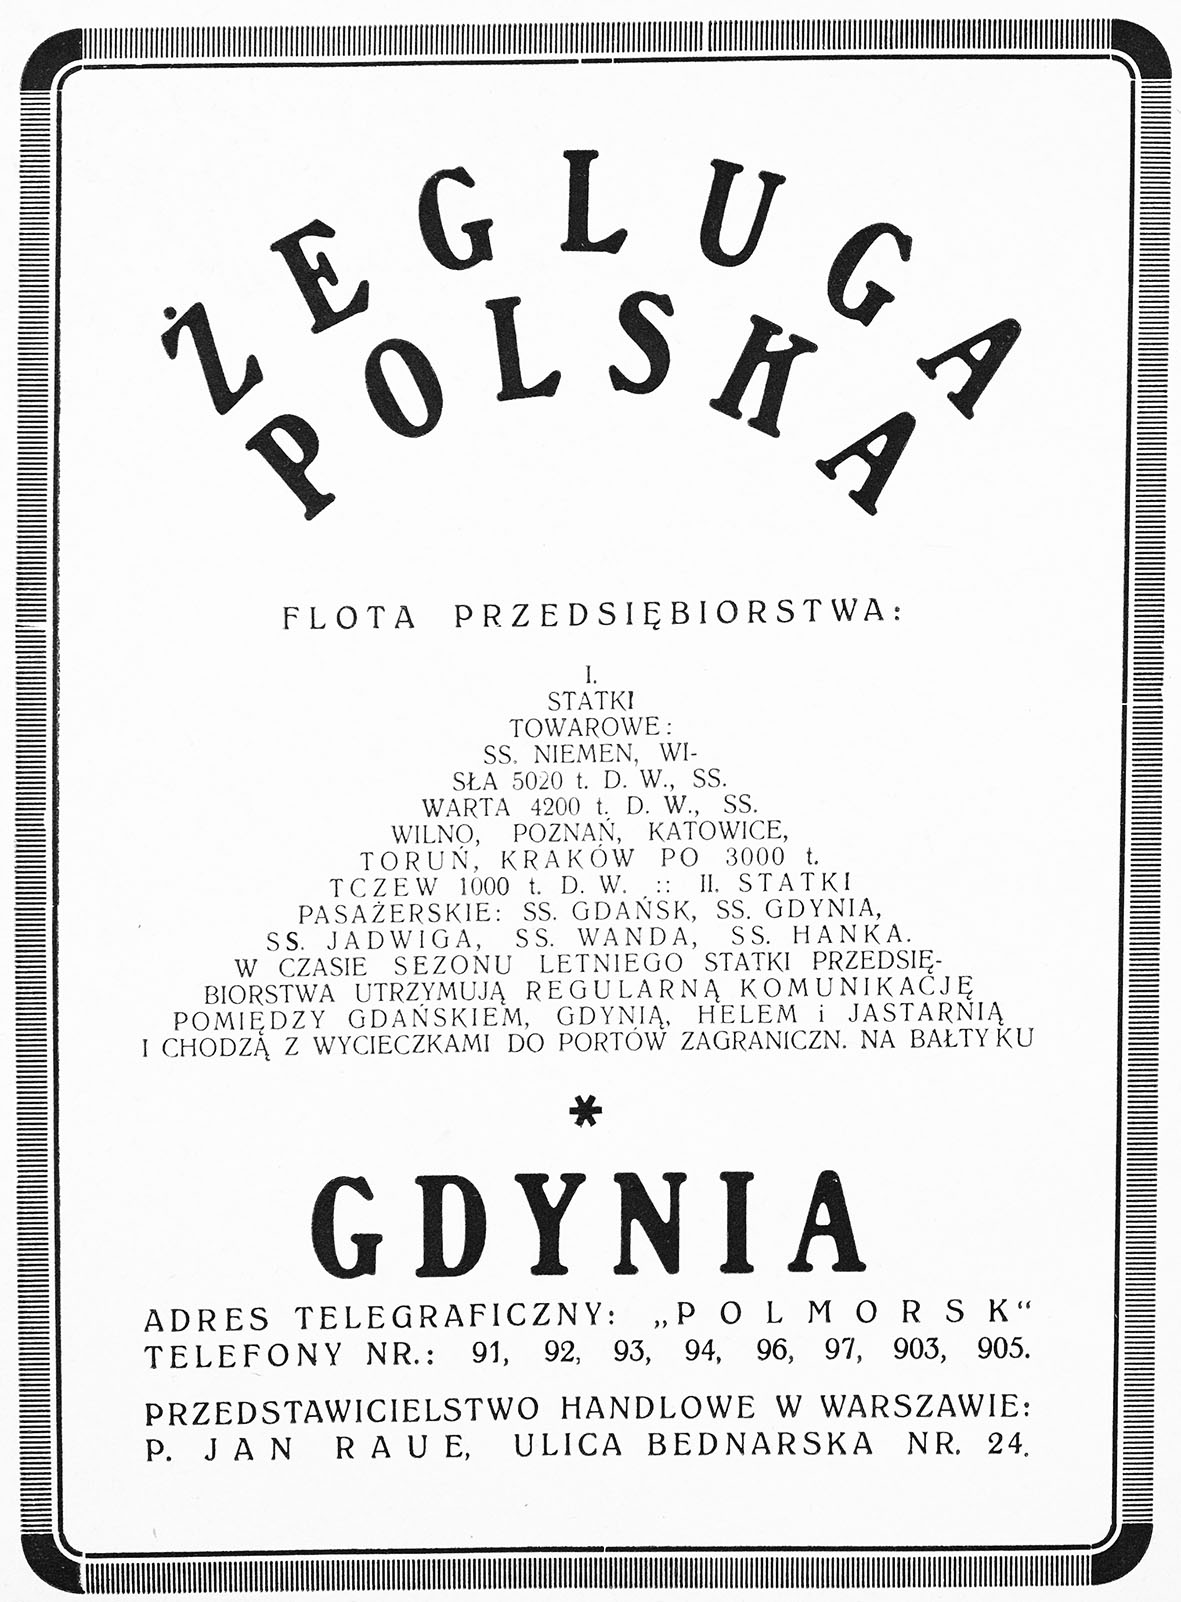 Żegluga Polska Gdynia